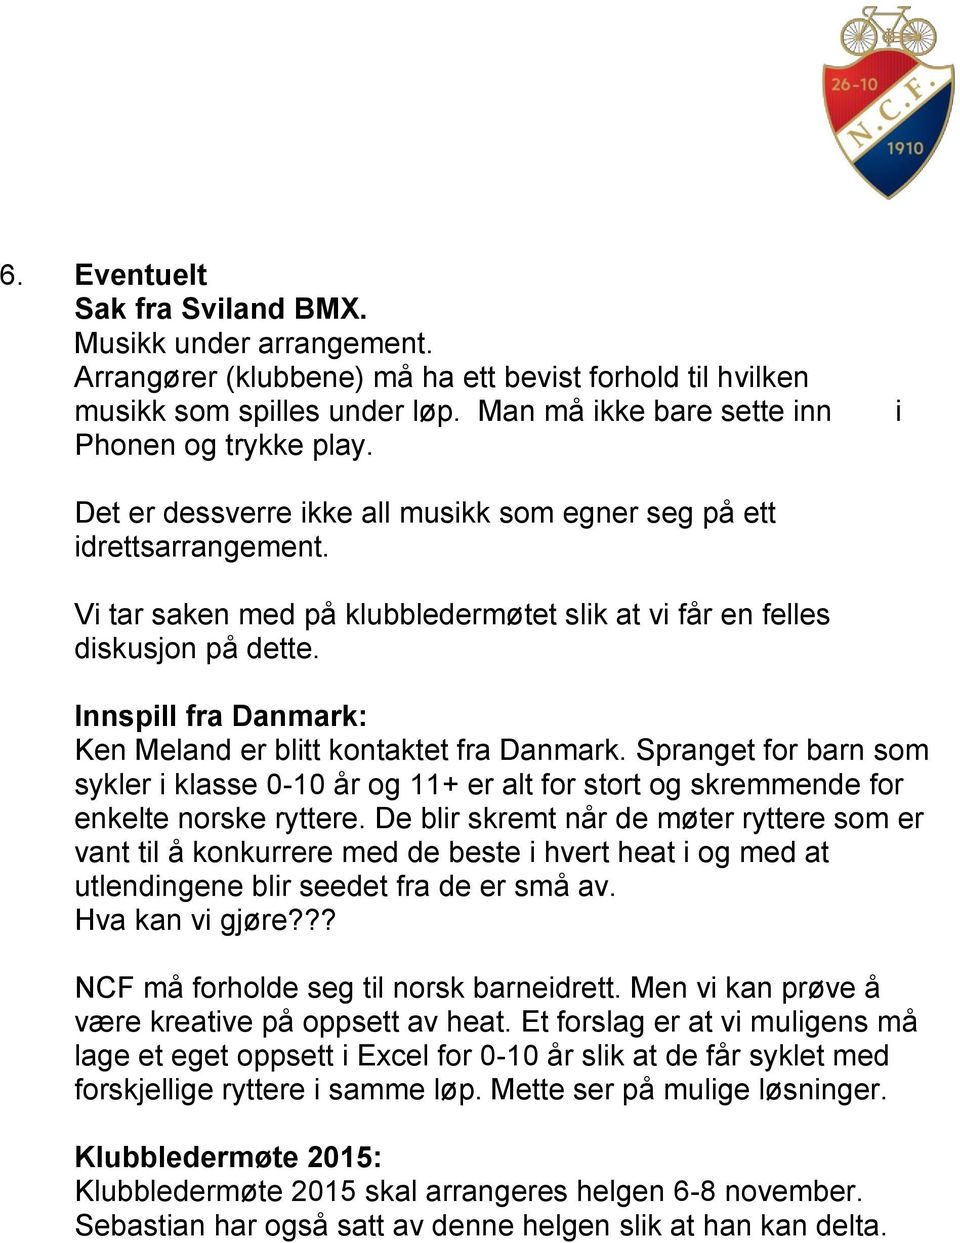 Innspill fra Danmark: Ken Meland er blitt kontaktet fra Danmark. Spranget for barn som sykler i klasse 0-10 år og 11+ er alt for stort og skremmende for enkelte norske ryttere.